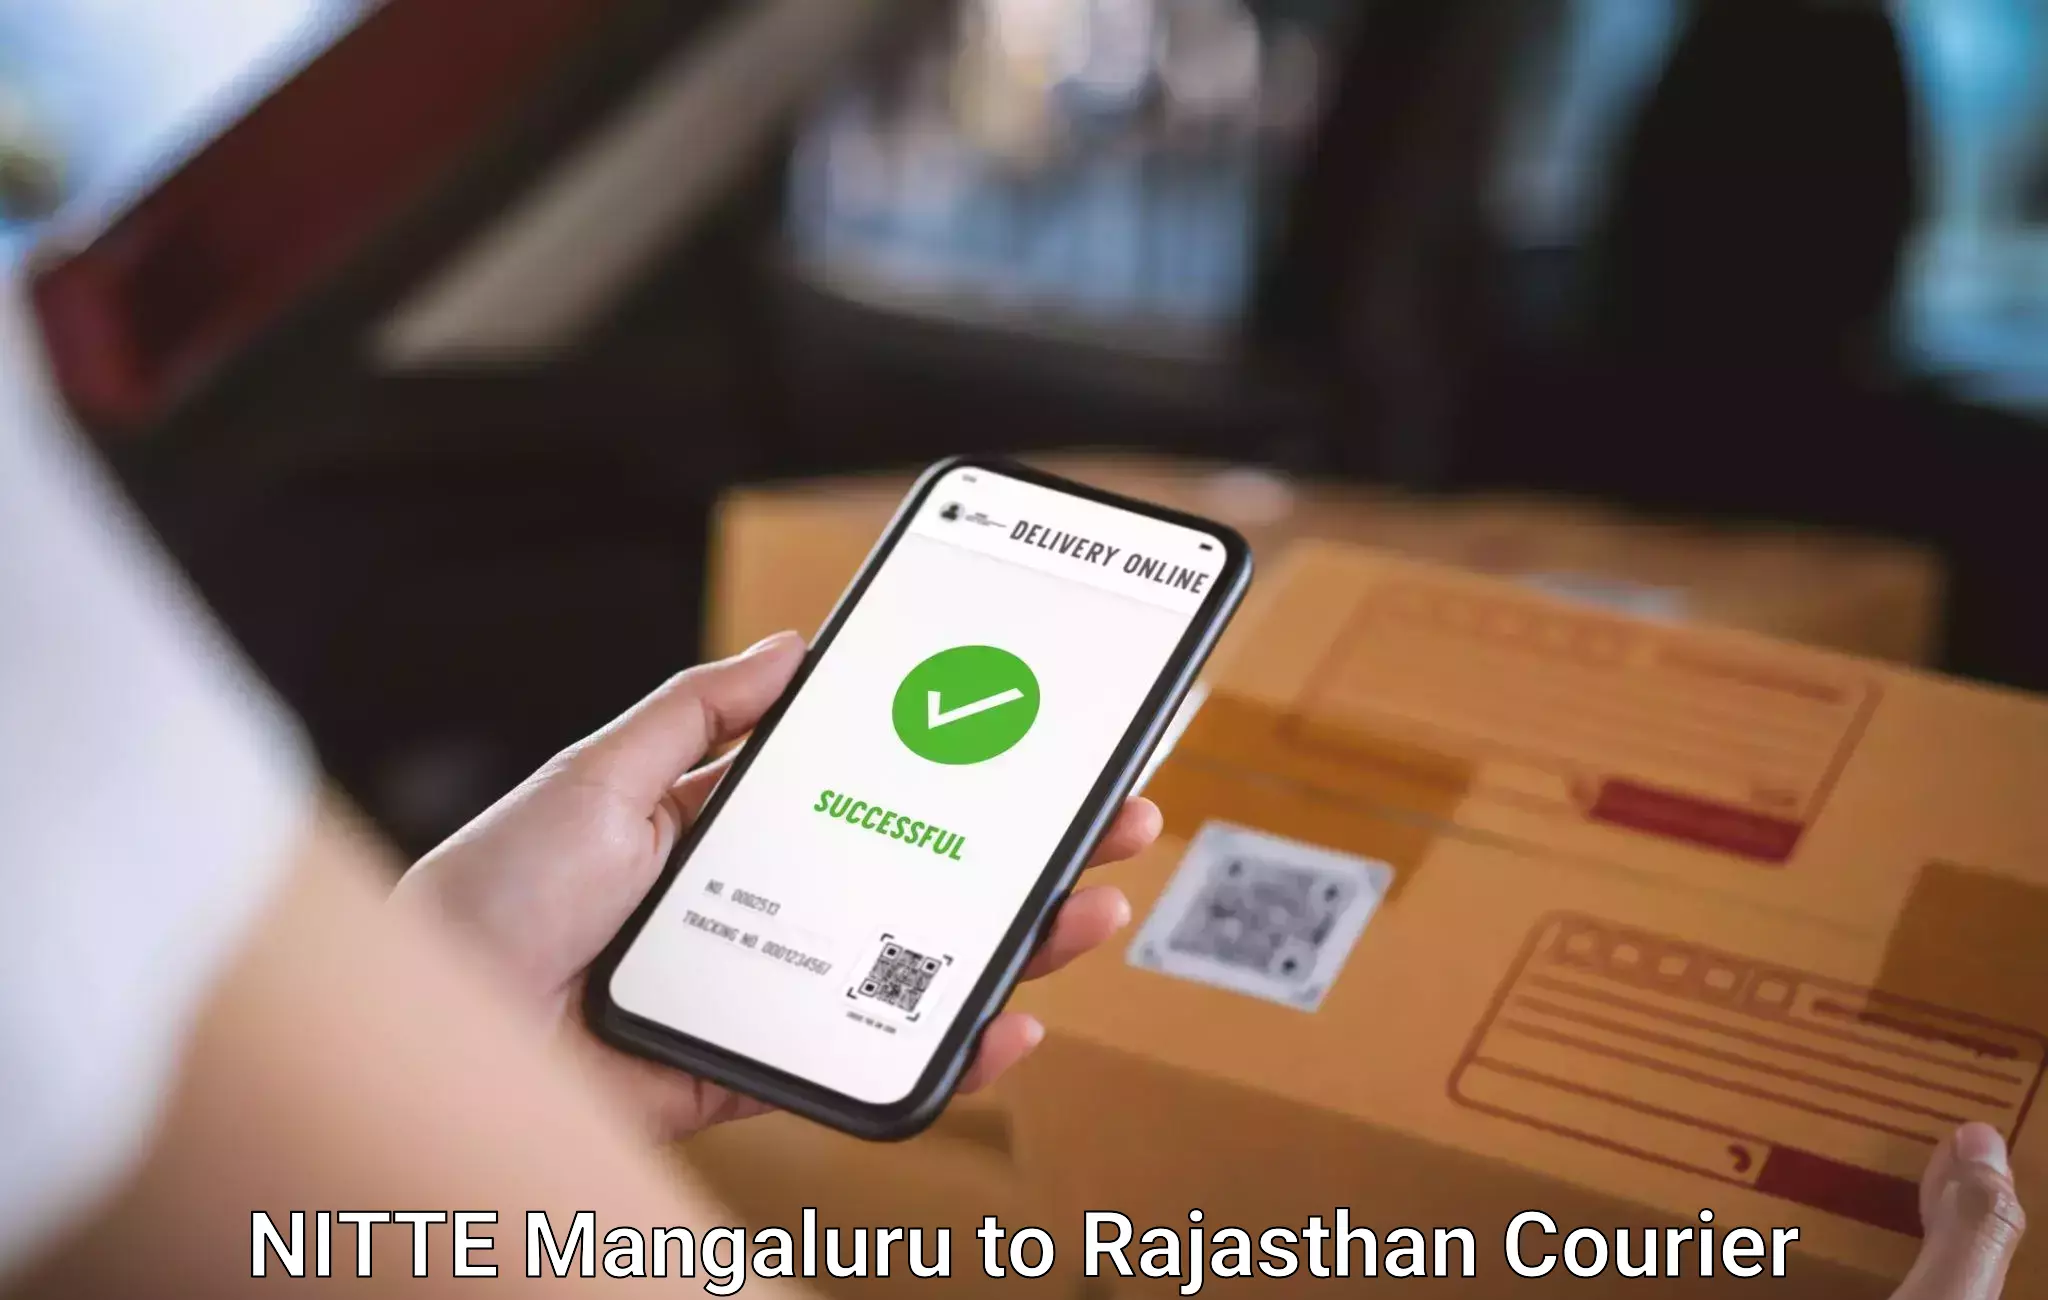 Baggage transport professionals NITTE Mangaluru to Rajasthan